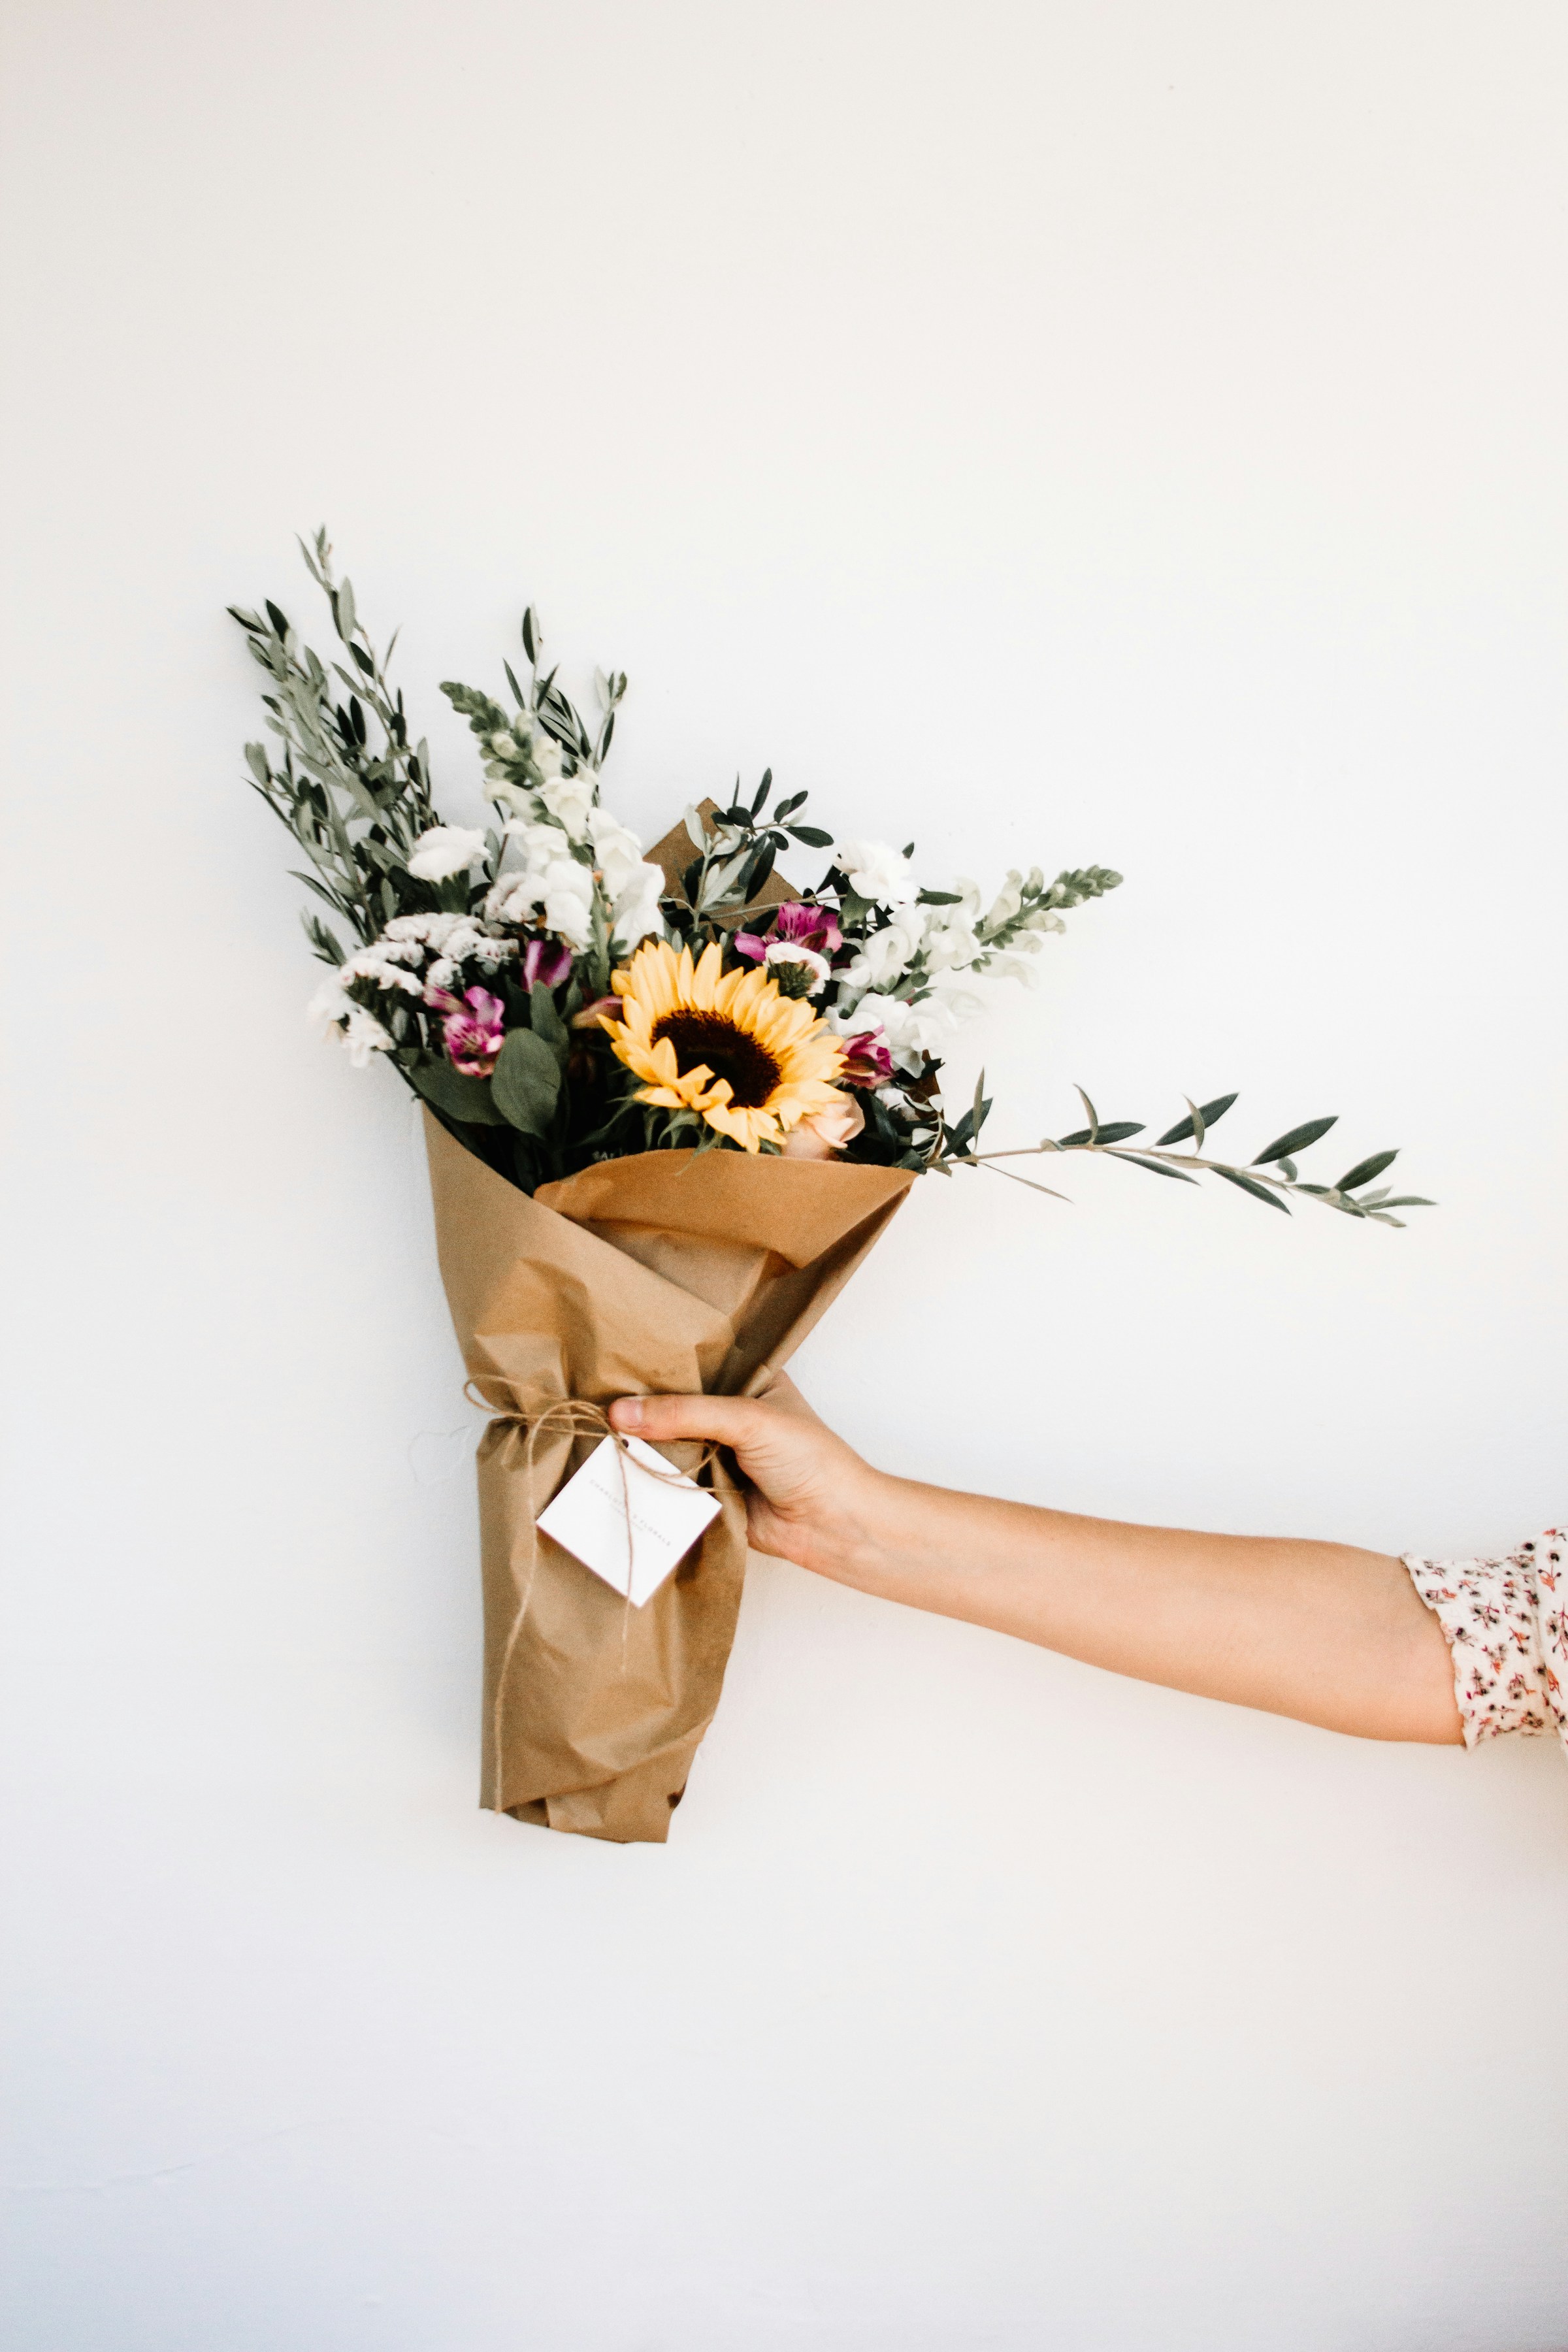 Une personne tenant un bouquet de fleurs | Source : Unsplash